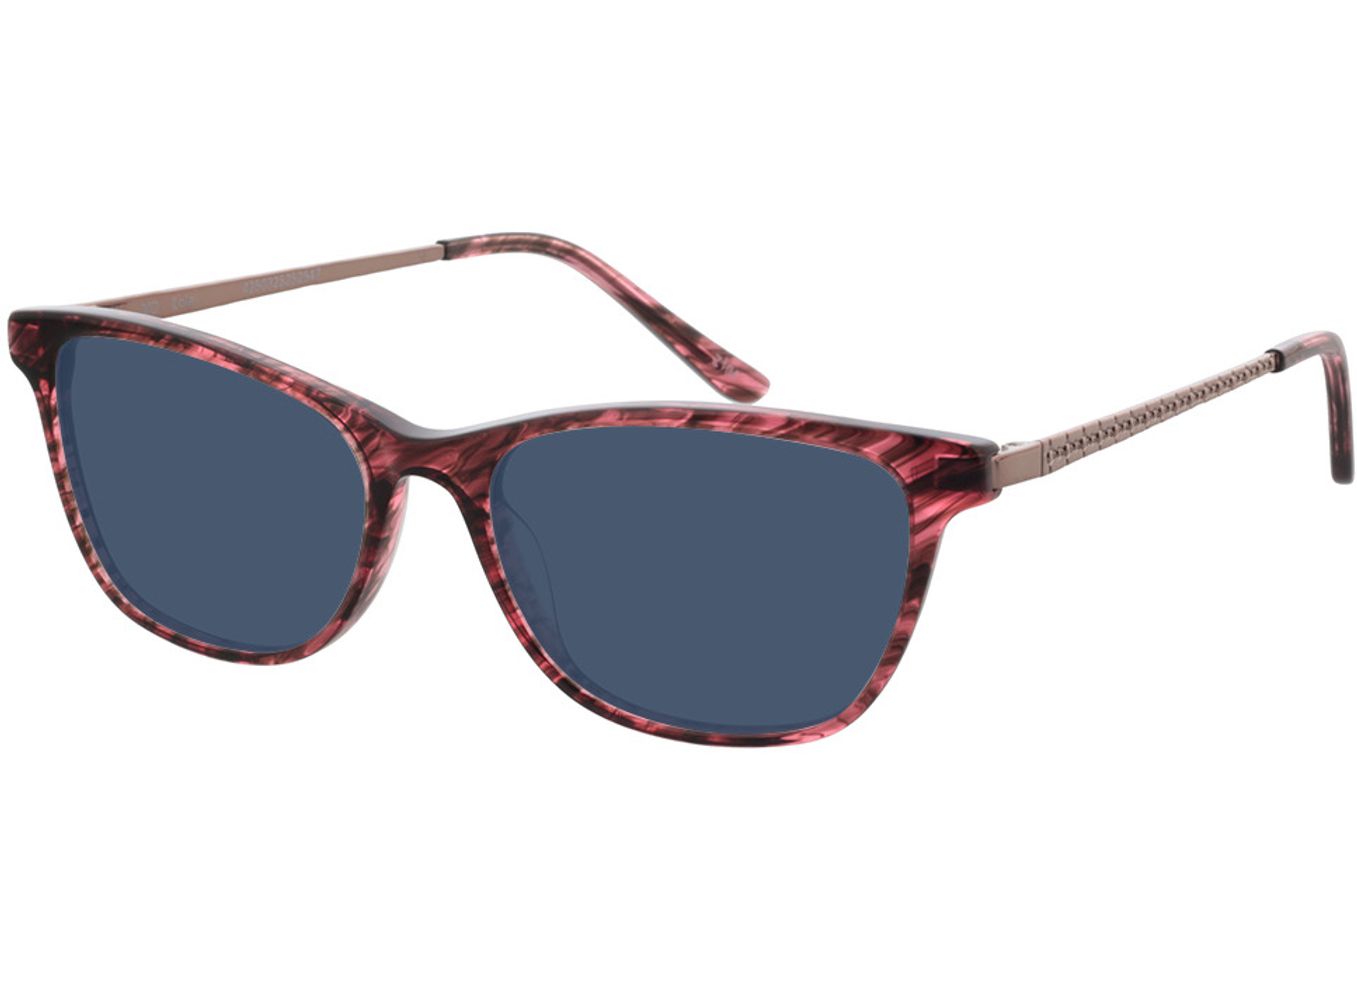 Lola - pink Sonnenbrille ohne Sehstärke, Vollrand, Rechteckig von Brille24 Collection